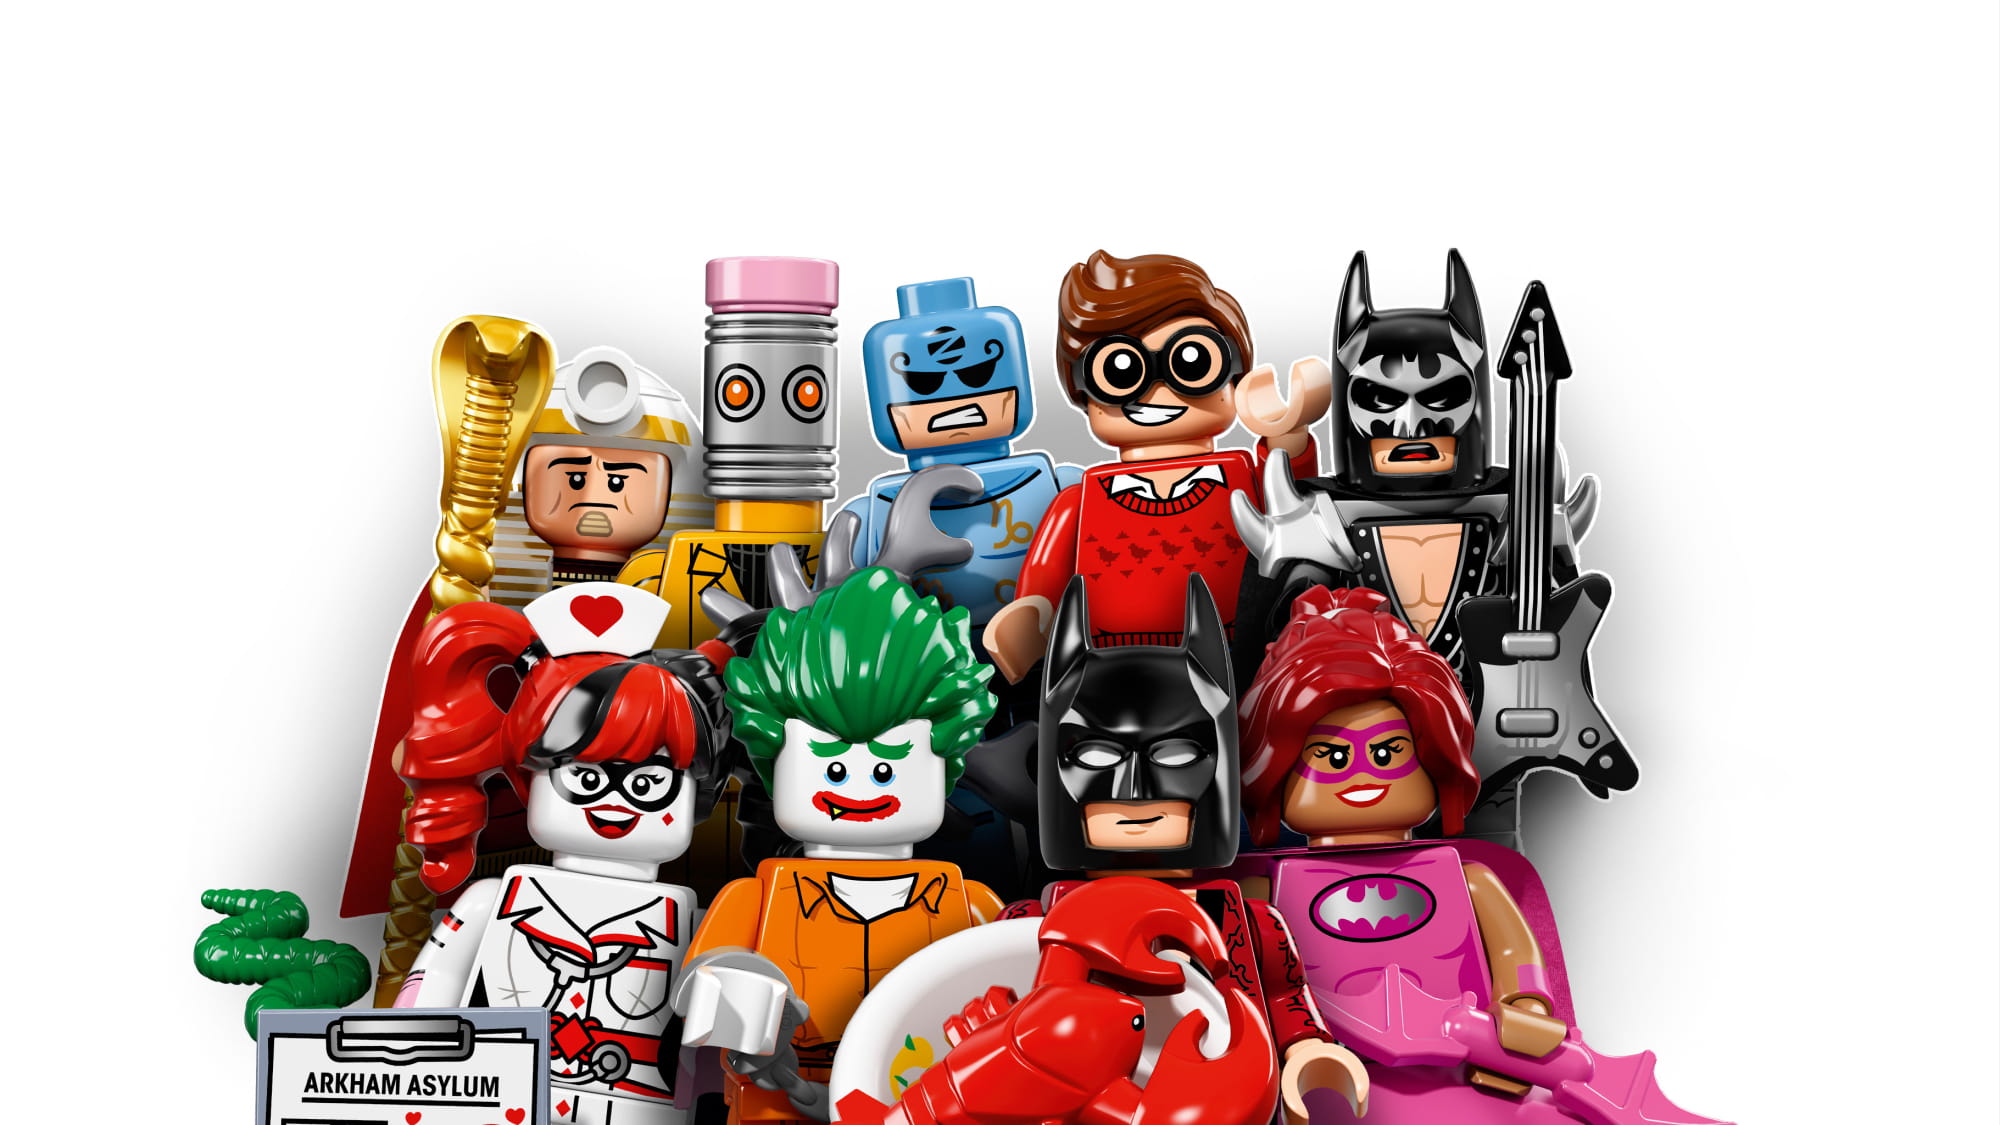 LEGO Minifiguren 1 Stück The Batman Movie Sammelfiguren Limitiert